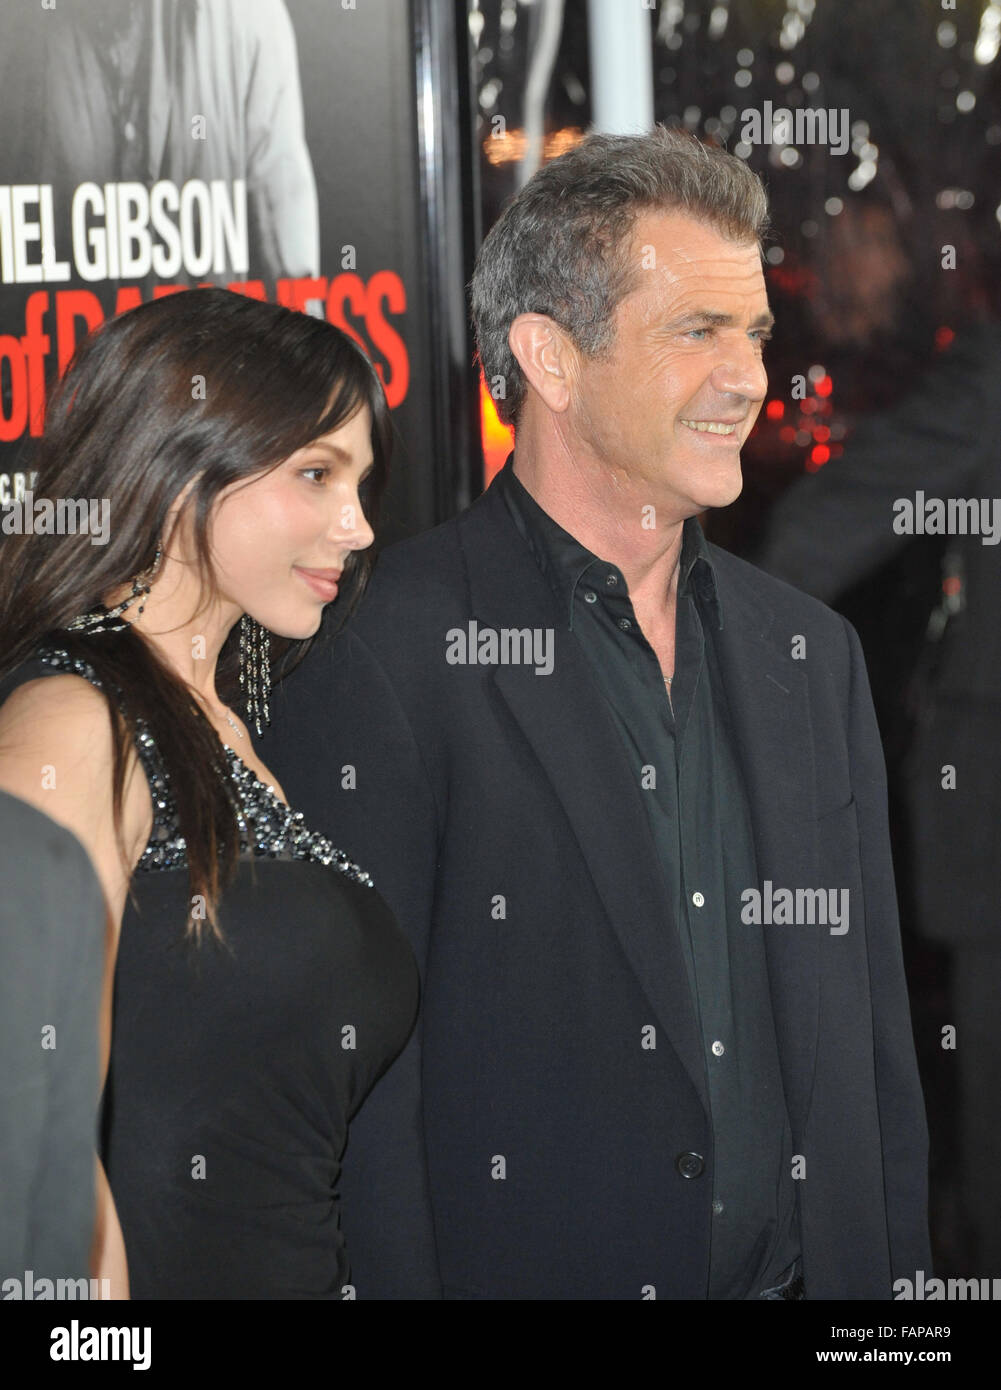 LOS ANGELES, CA - Gennaio 26, 2010: Mel Gibson & fidanzata Oksana Grigorieva presso il Los Angeles premiere del suo nuovo film 'Edge of Darkness' a Grauman's Chinese Theater di Hollywood. Foto Stock